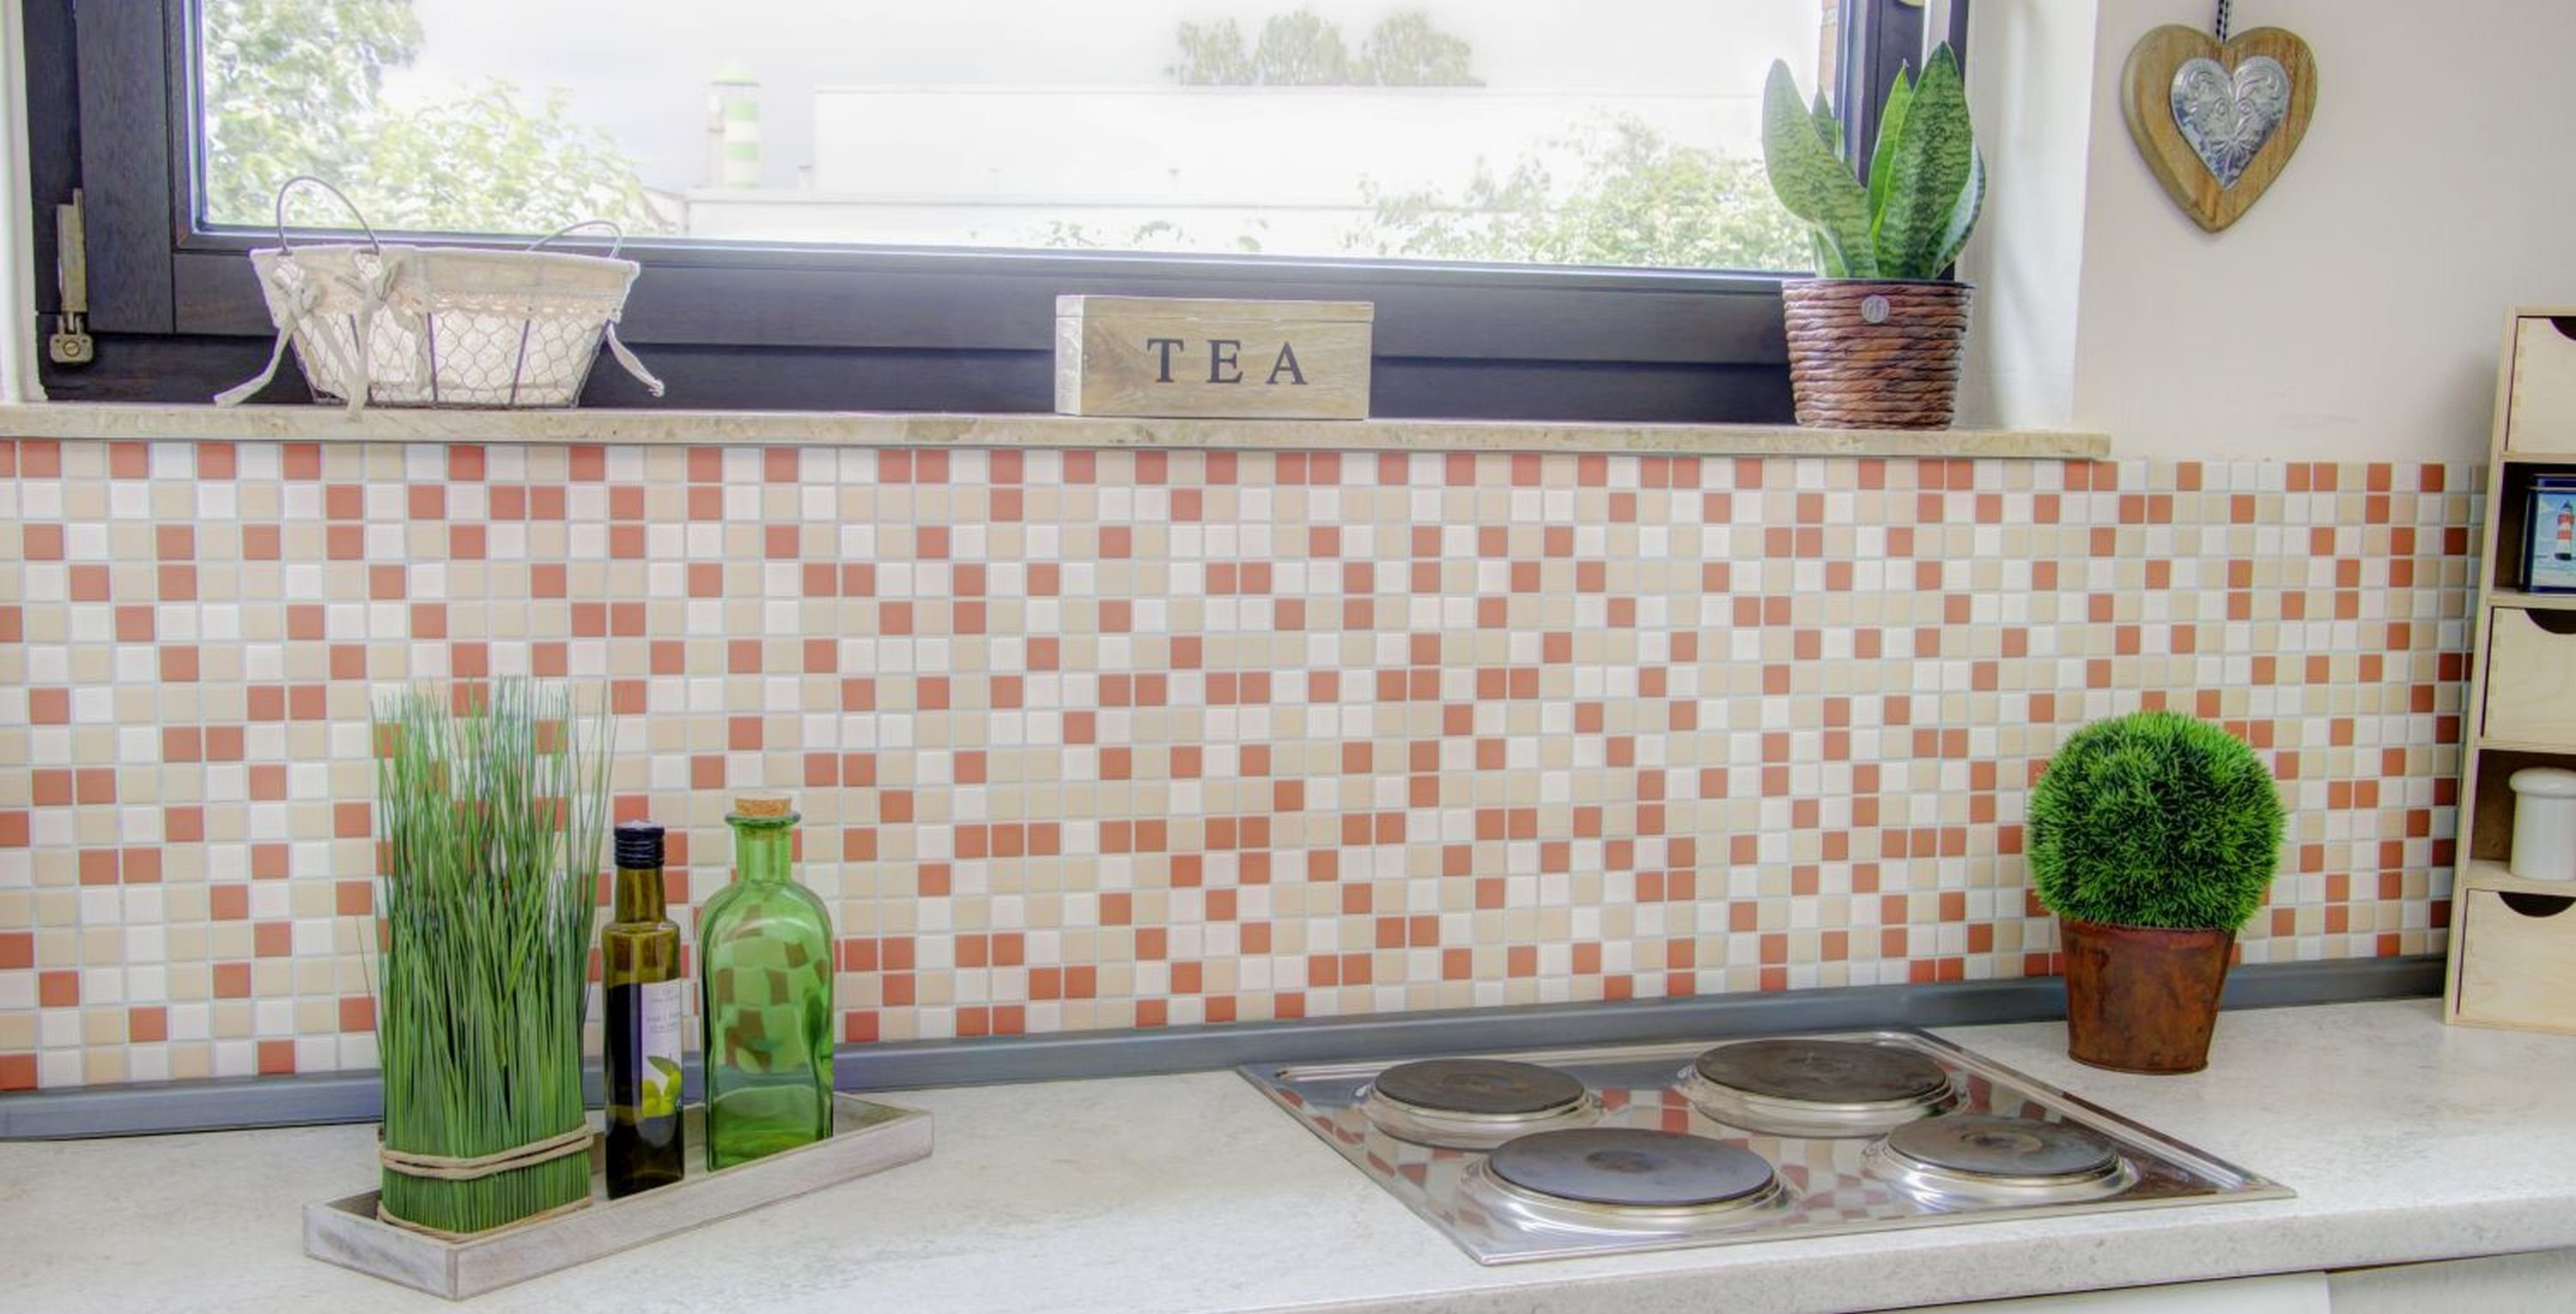 Küche Fliese matt Mosani Fliesenspiegel Keramik weiß terracotta creme Mosaikfliesen Mosaik